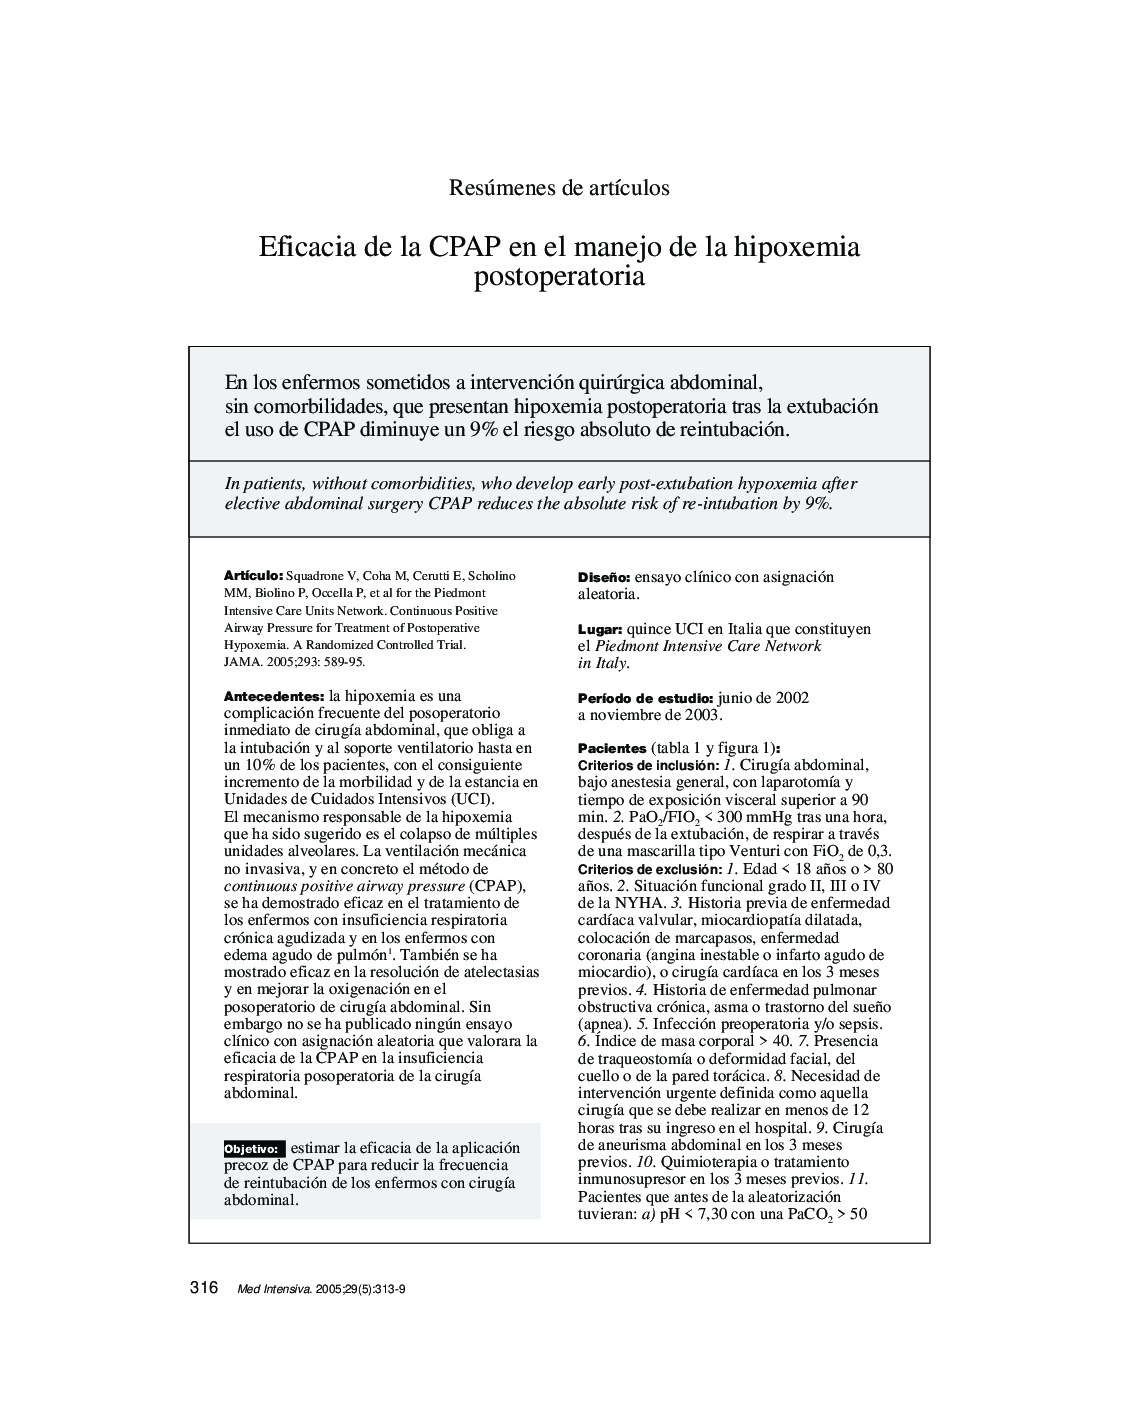 Eficacia de la CPAP en el manejo de la hipoxemia postoperatoria